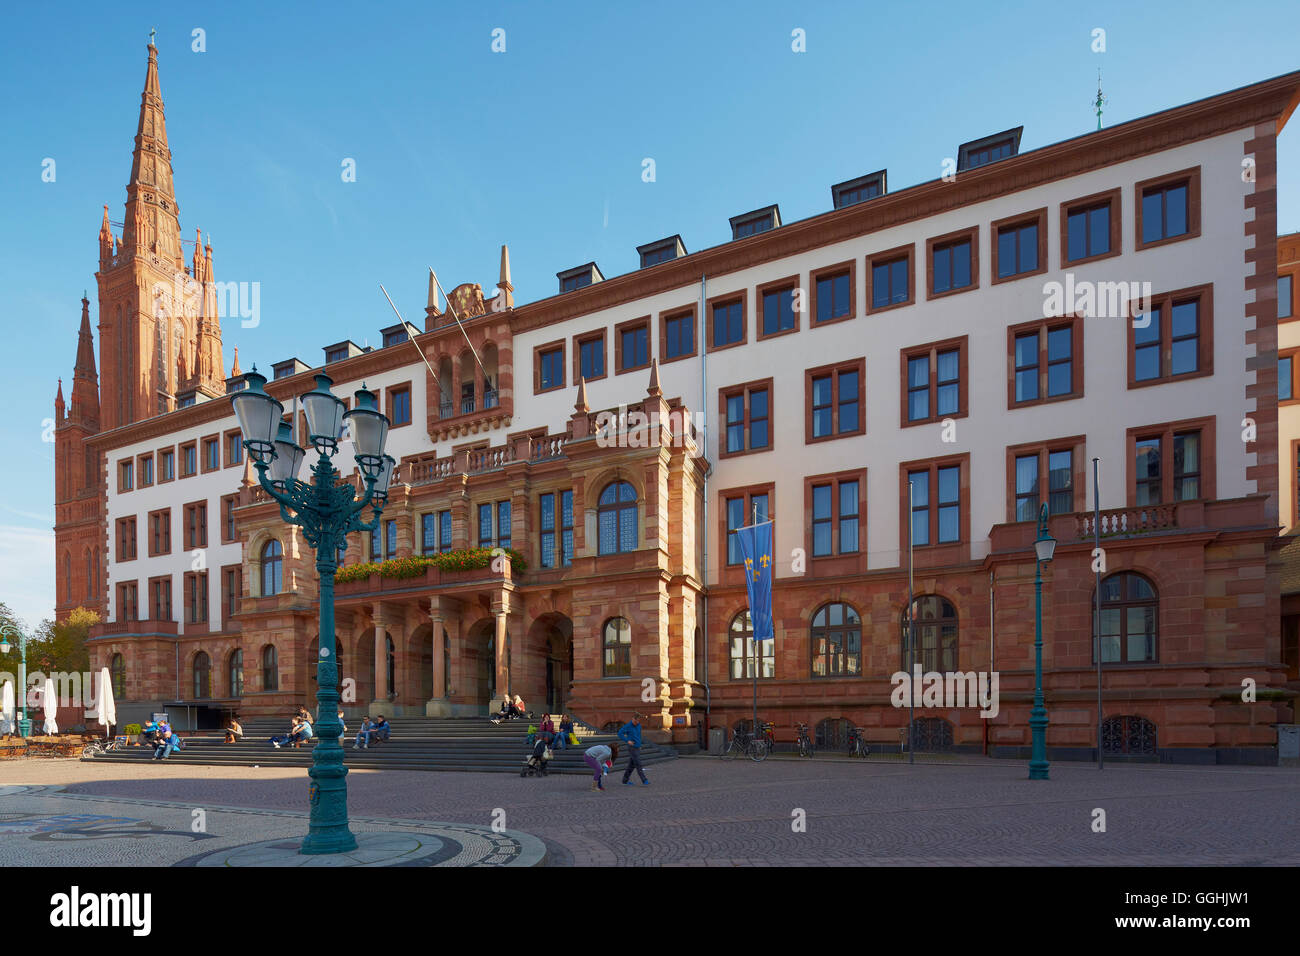 Mairie, Neues Rathaus et l'église Marktkirche,, sur la place du marché, Wiesbaden, Mittelrhein, Rhin moyen, Hesse, Germany, Europe Banque D'Images